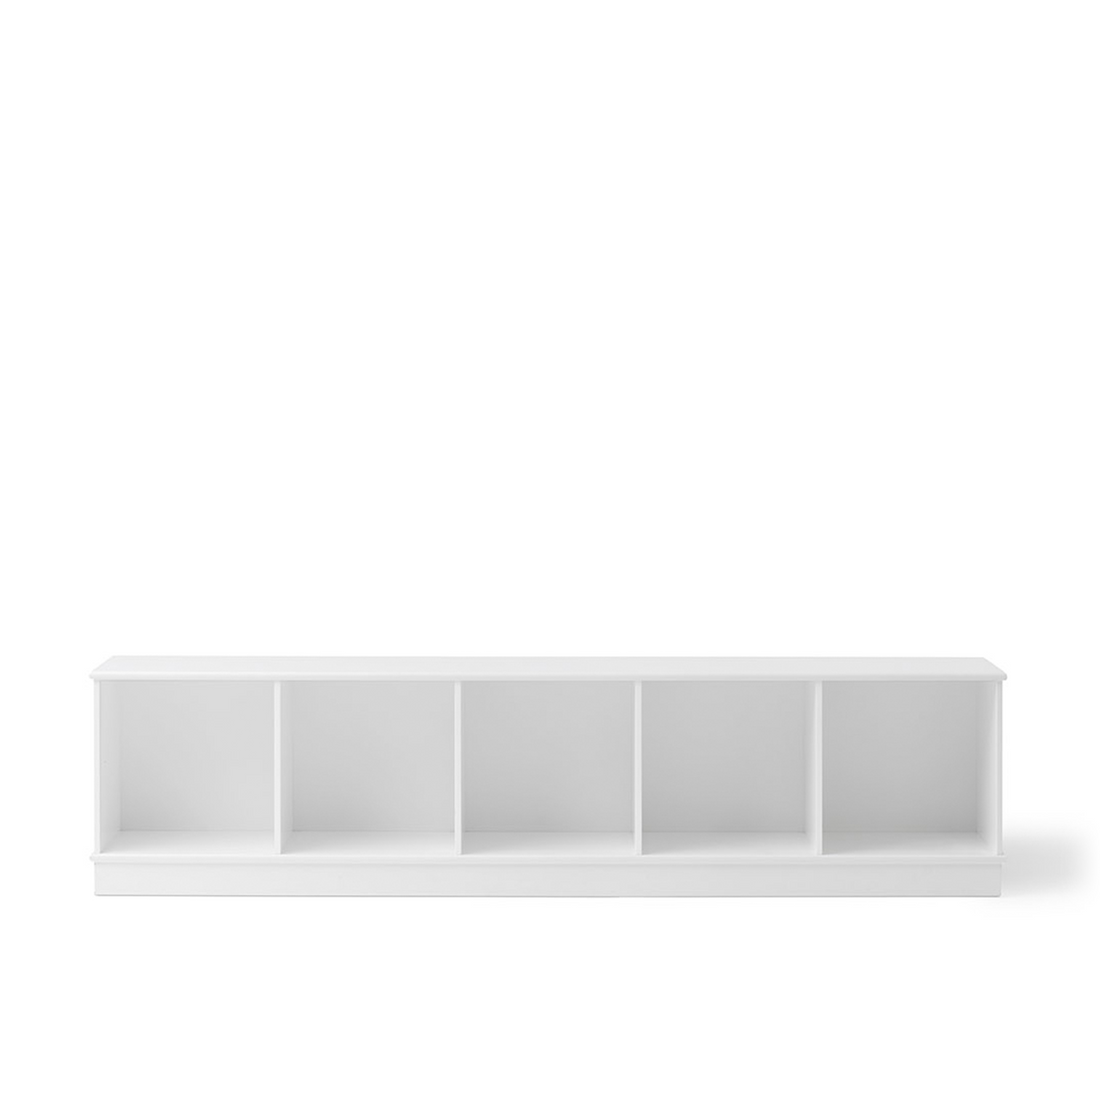 Oliver Furniture Wood Shelving Unit 5x1 Horizontal Shelf with Base